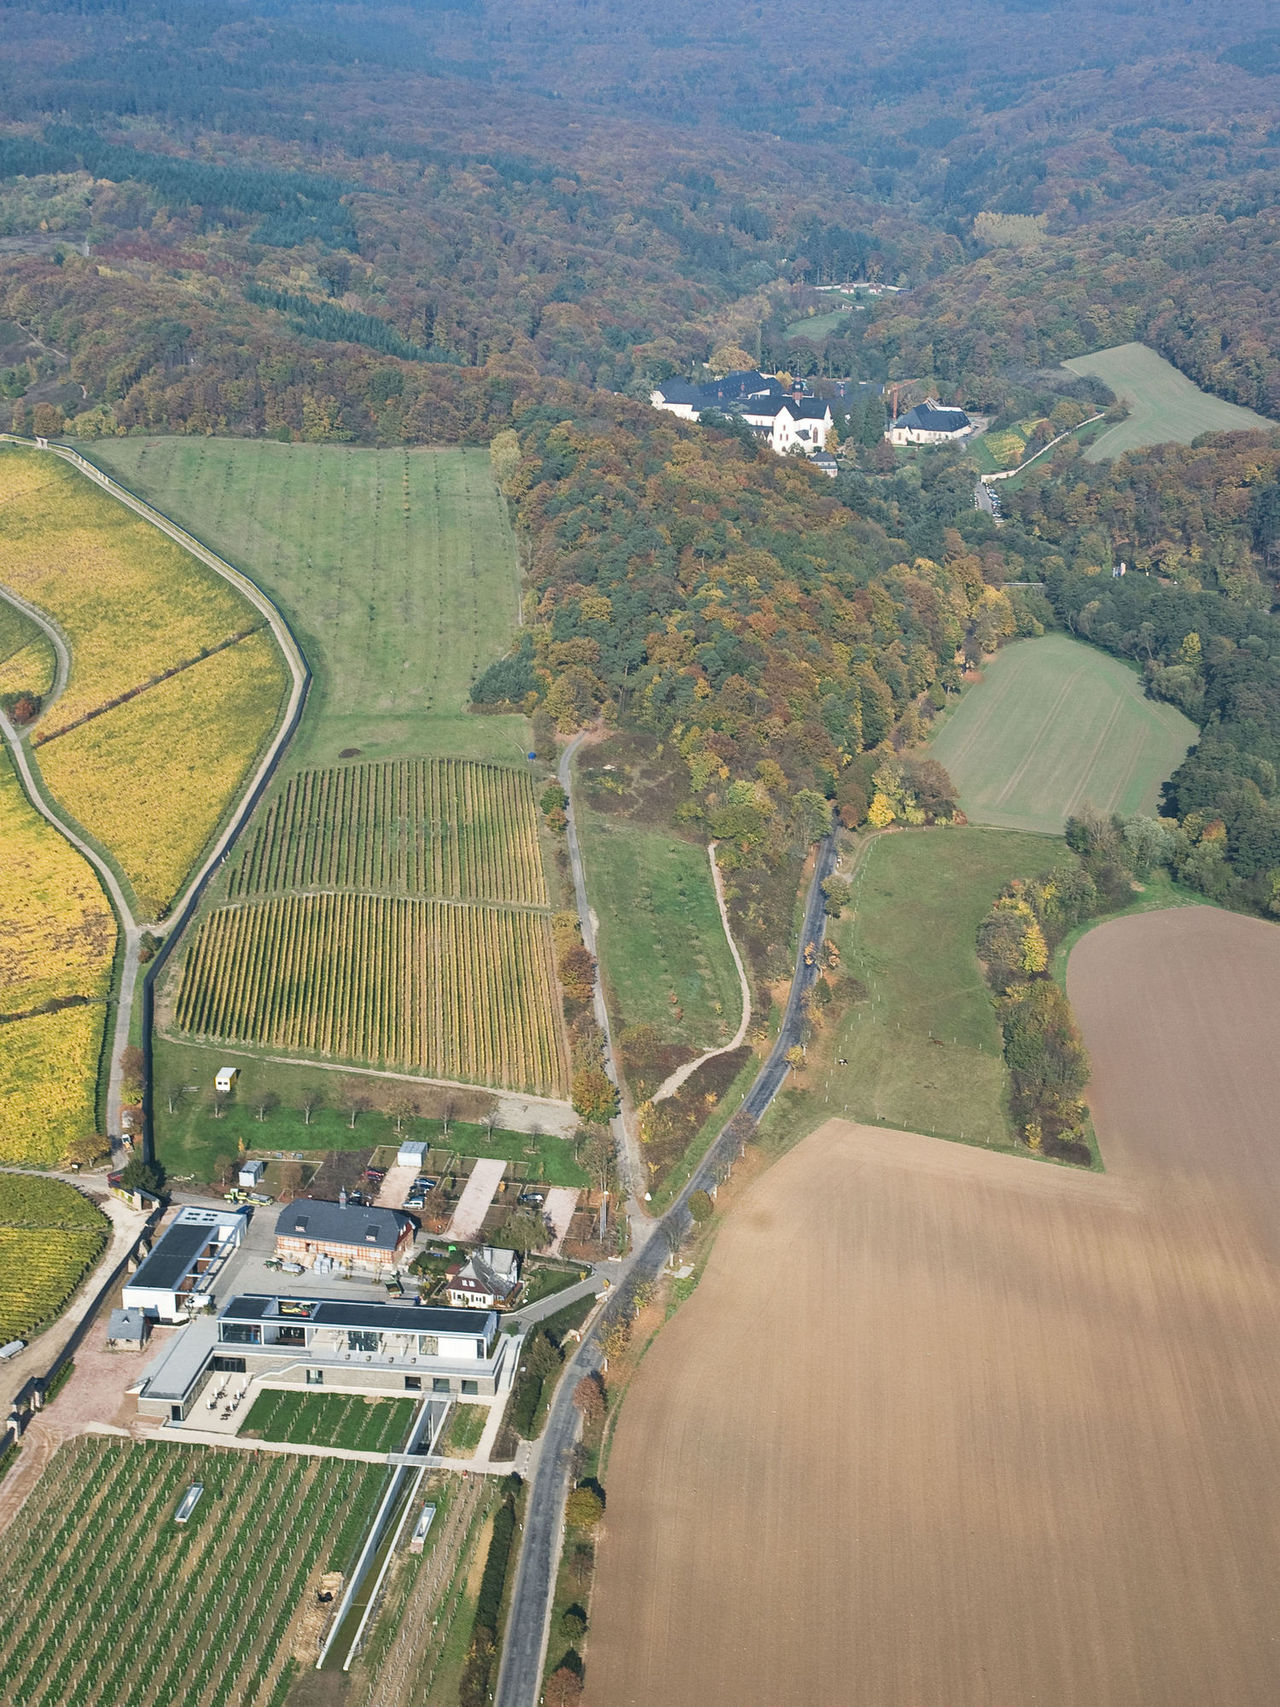 Luftbild mit Blick auf den Steinbergkeller inmitten von Feldern und Wald